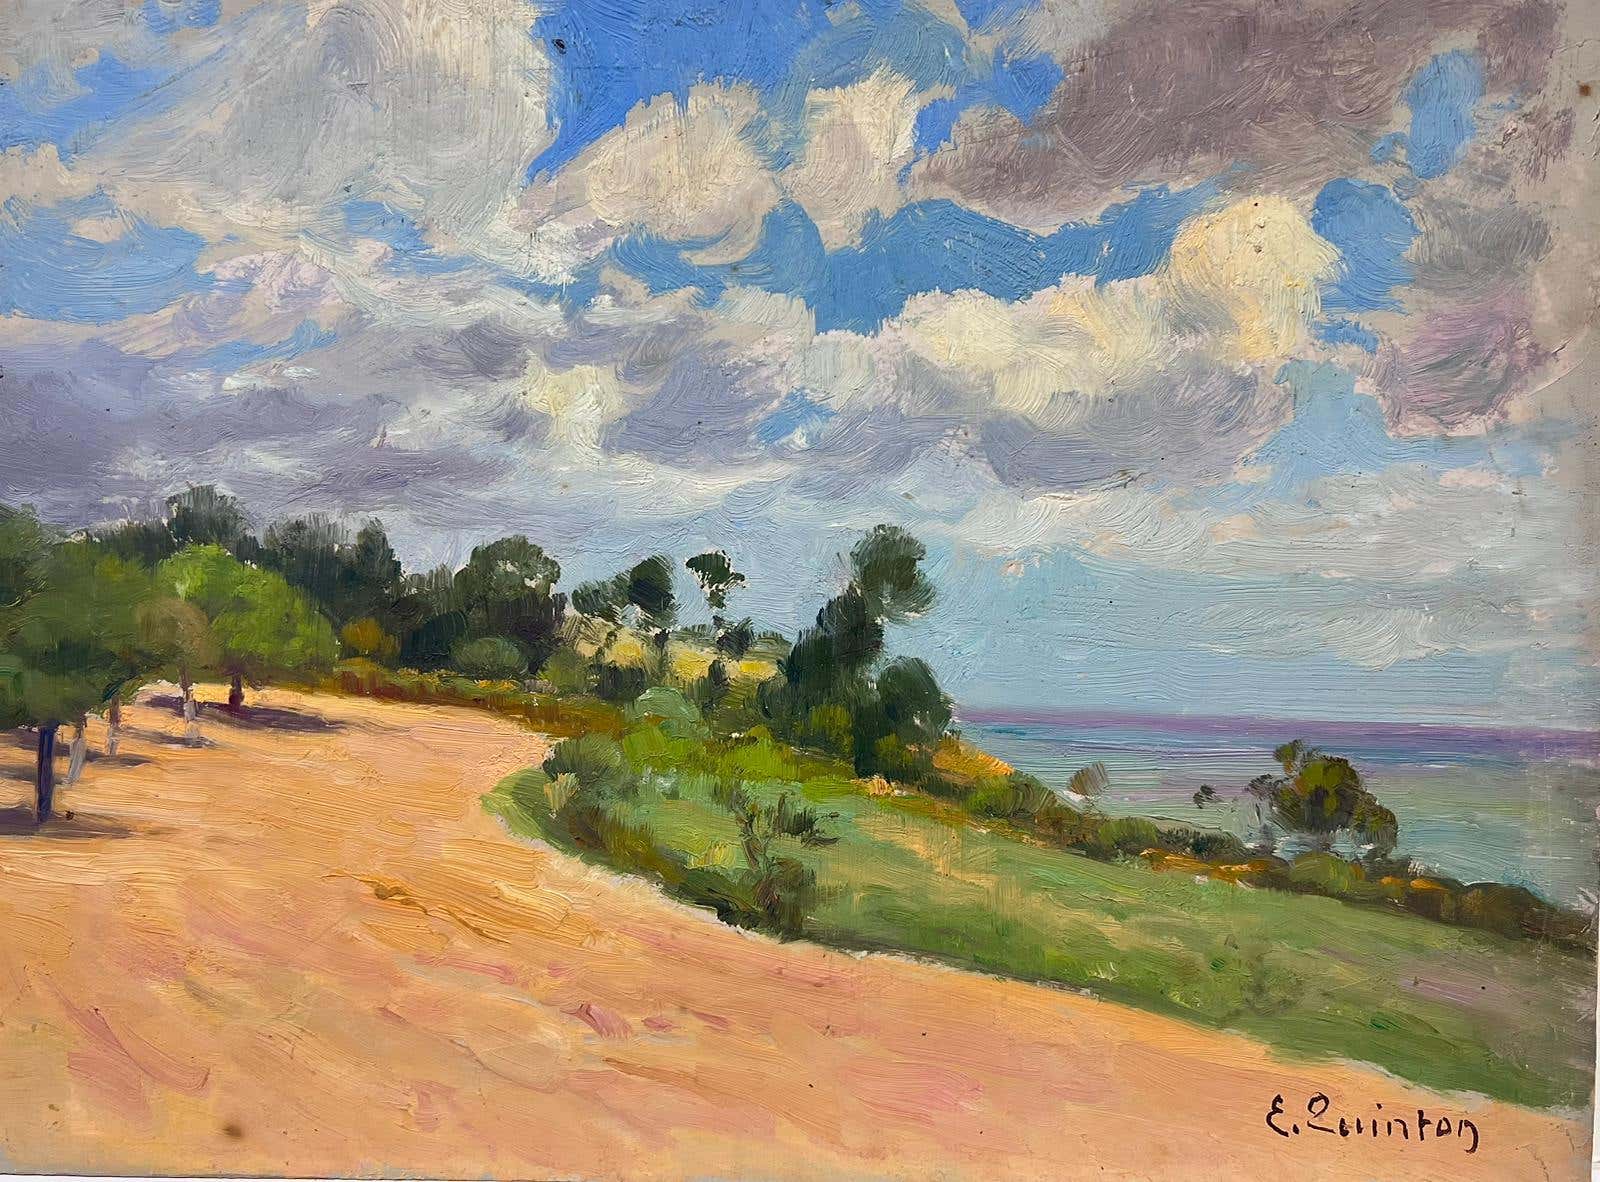 Pittura ad olio firmata da un impressionista francese degli anni '30 - Sentiero marino di sabbia dorata